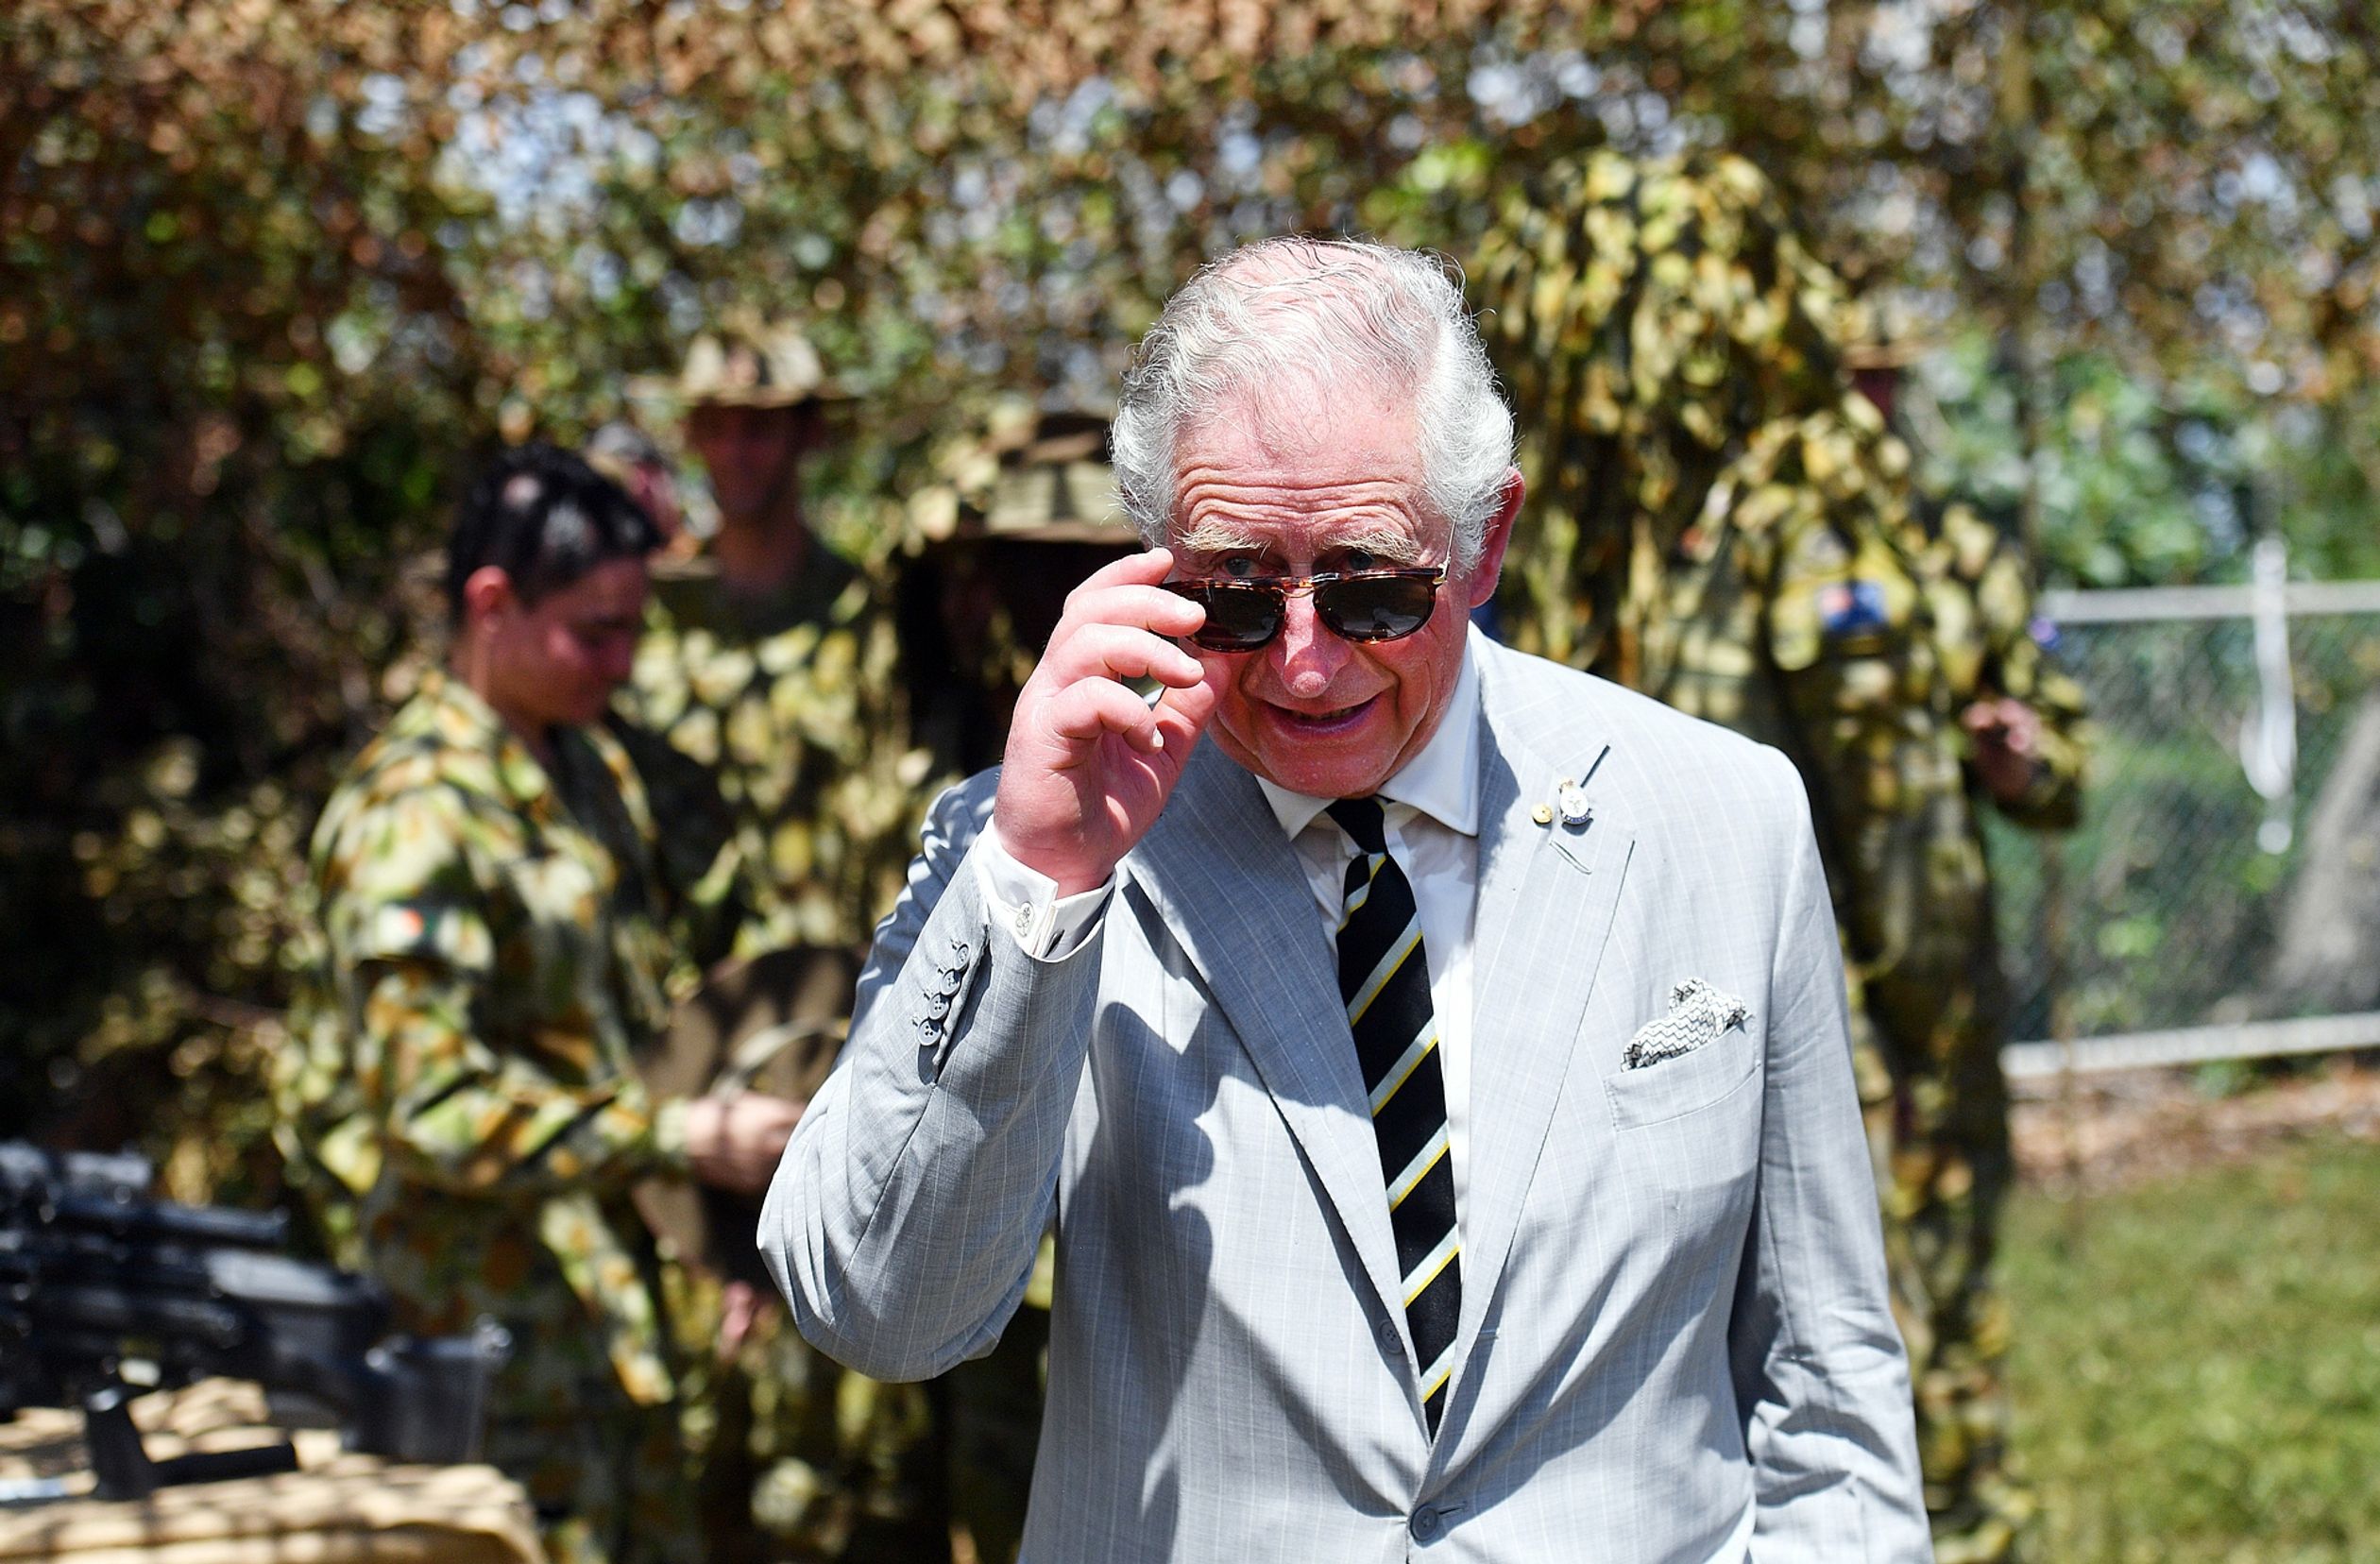 Bij zijn bezoek aan het warme Australië in 2018 kon prins Charles ook wel een zonnebril gebruiken!